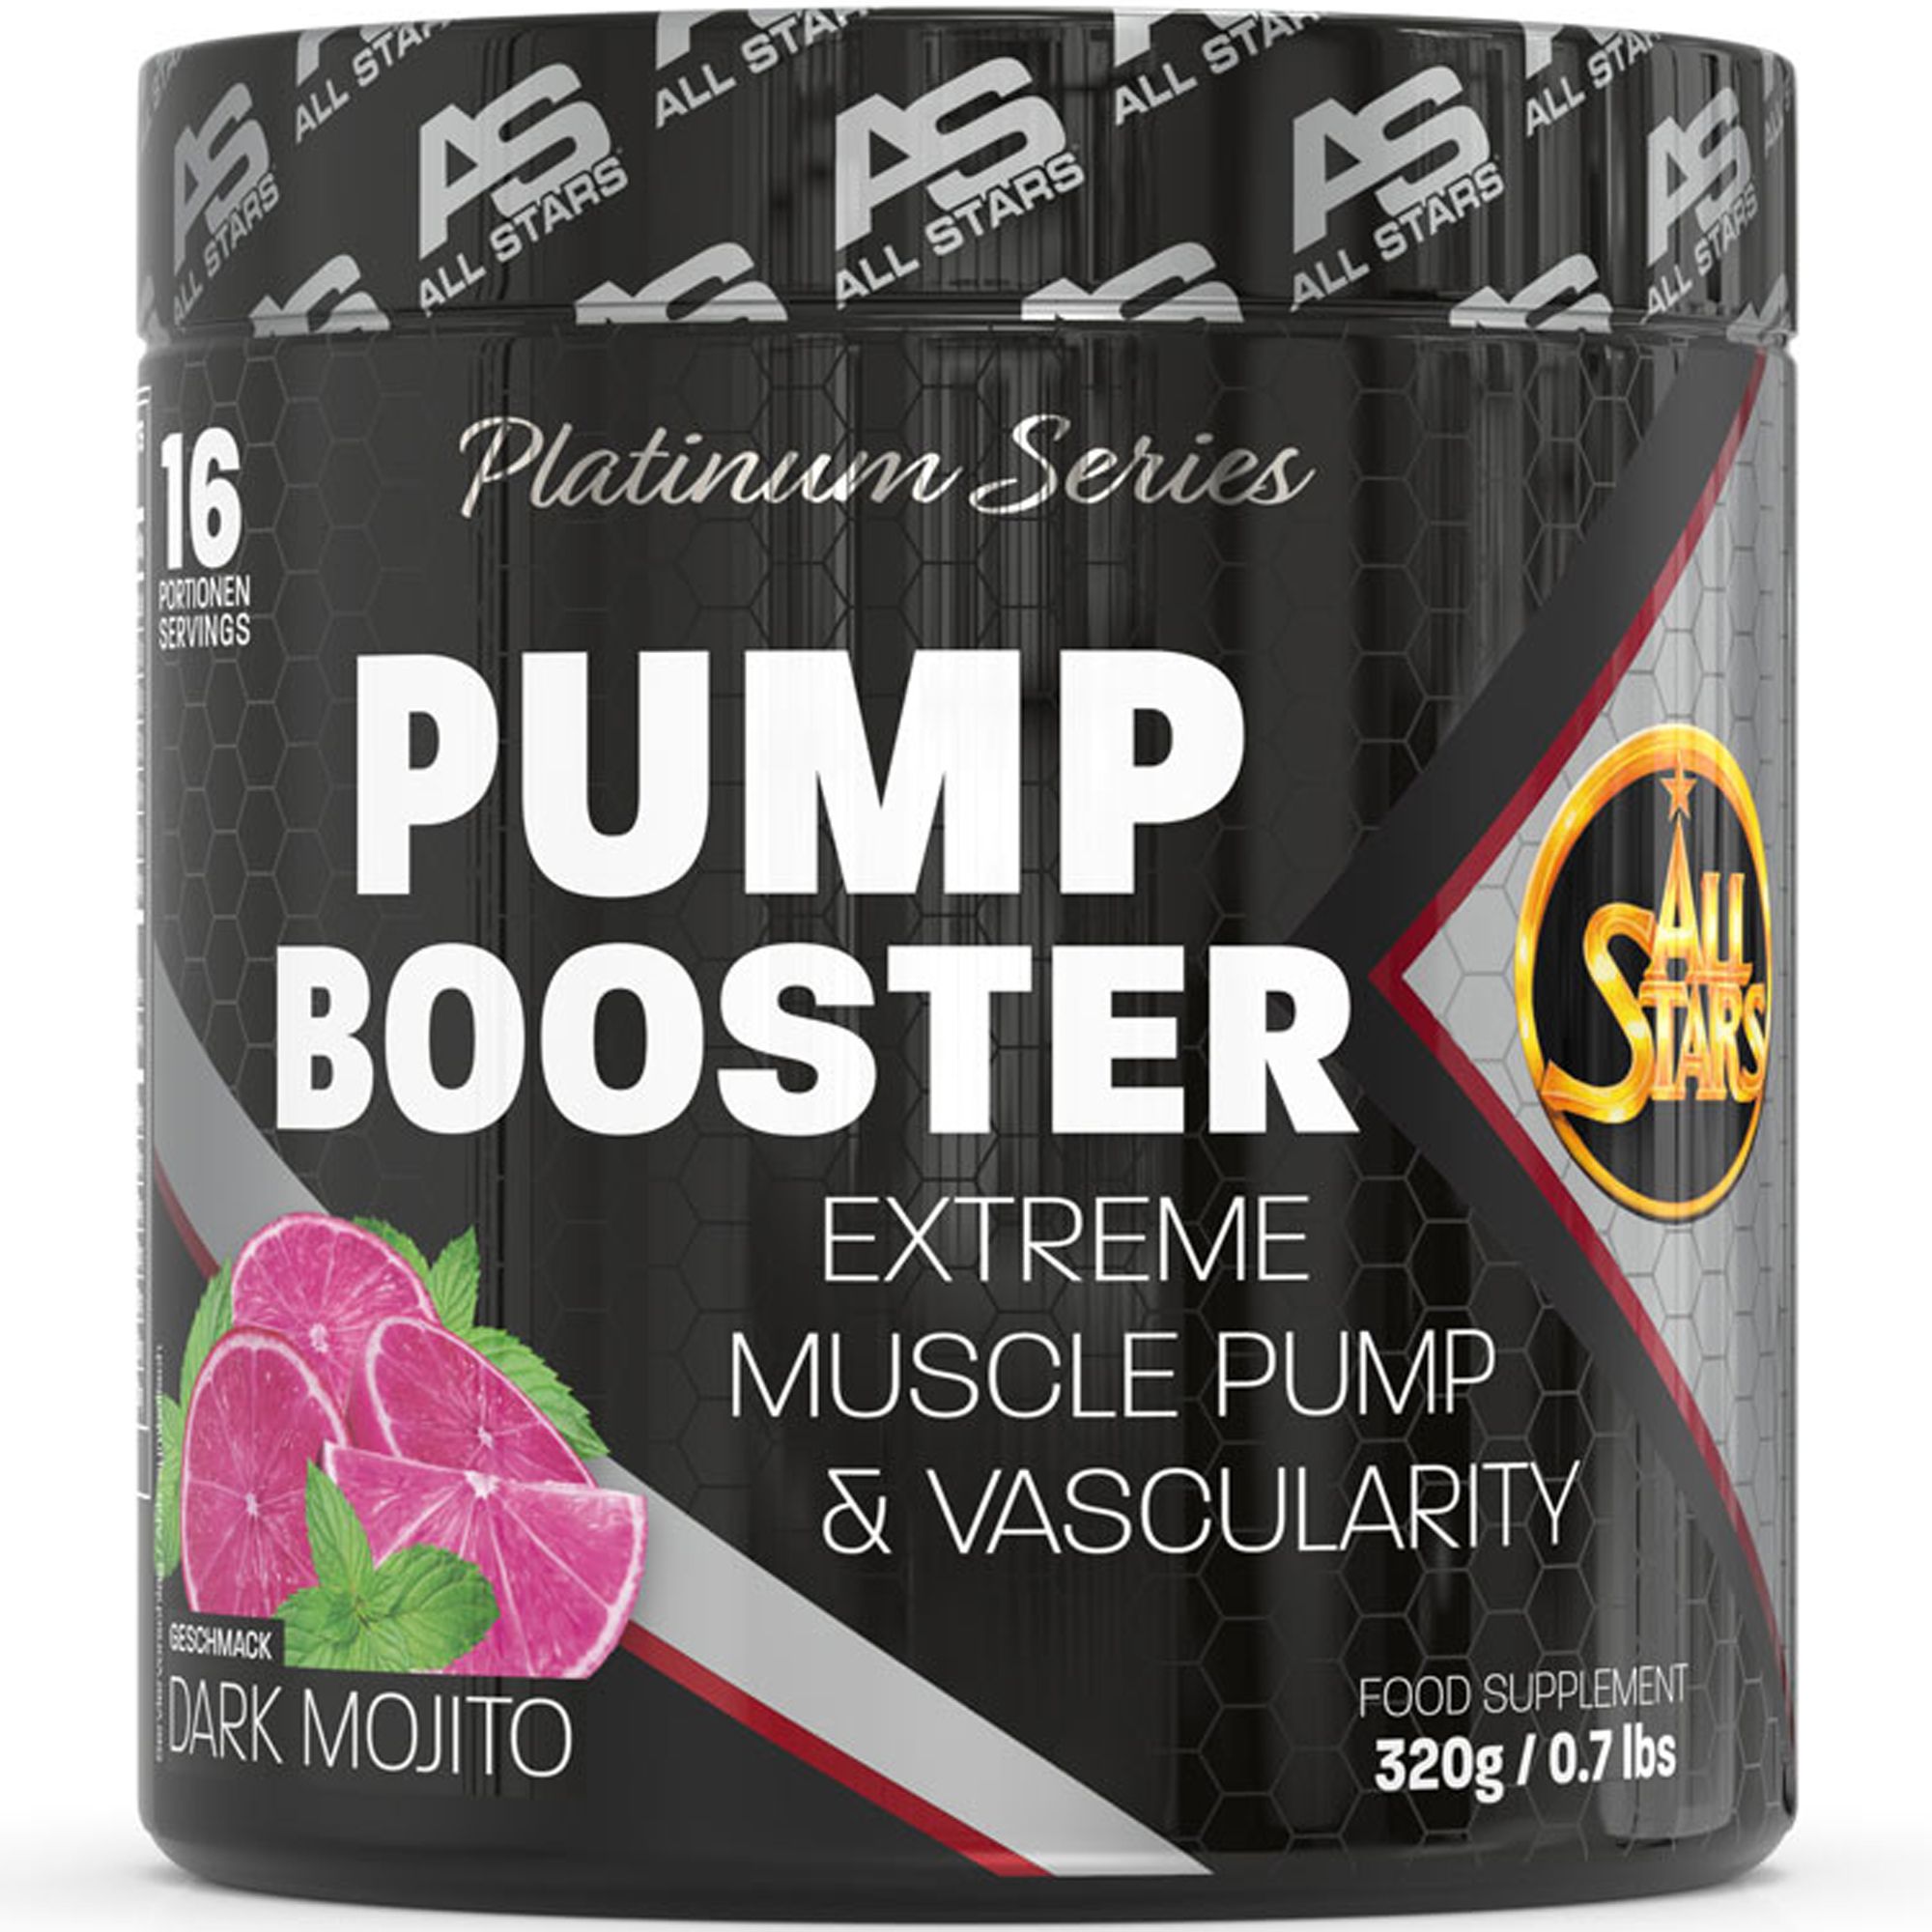 All Stars PLATINUM PUMP BOOSTER günstig kaufen bei FitnessWebshop !